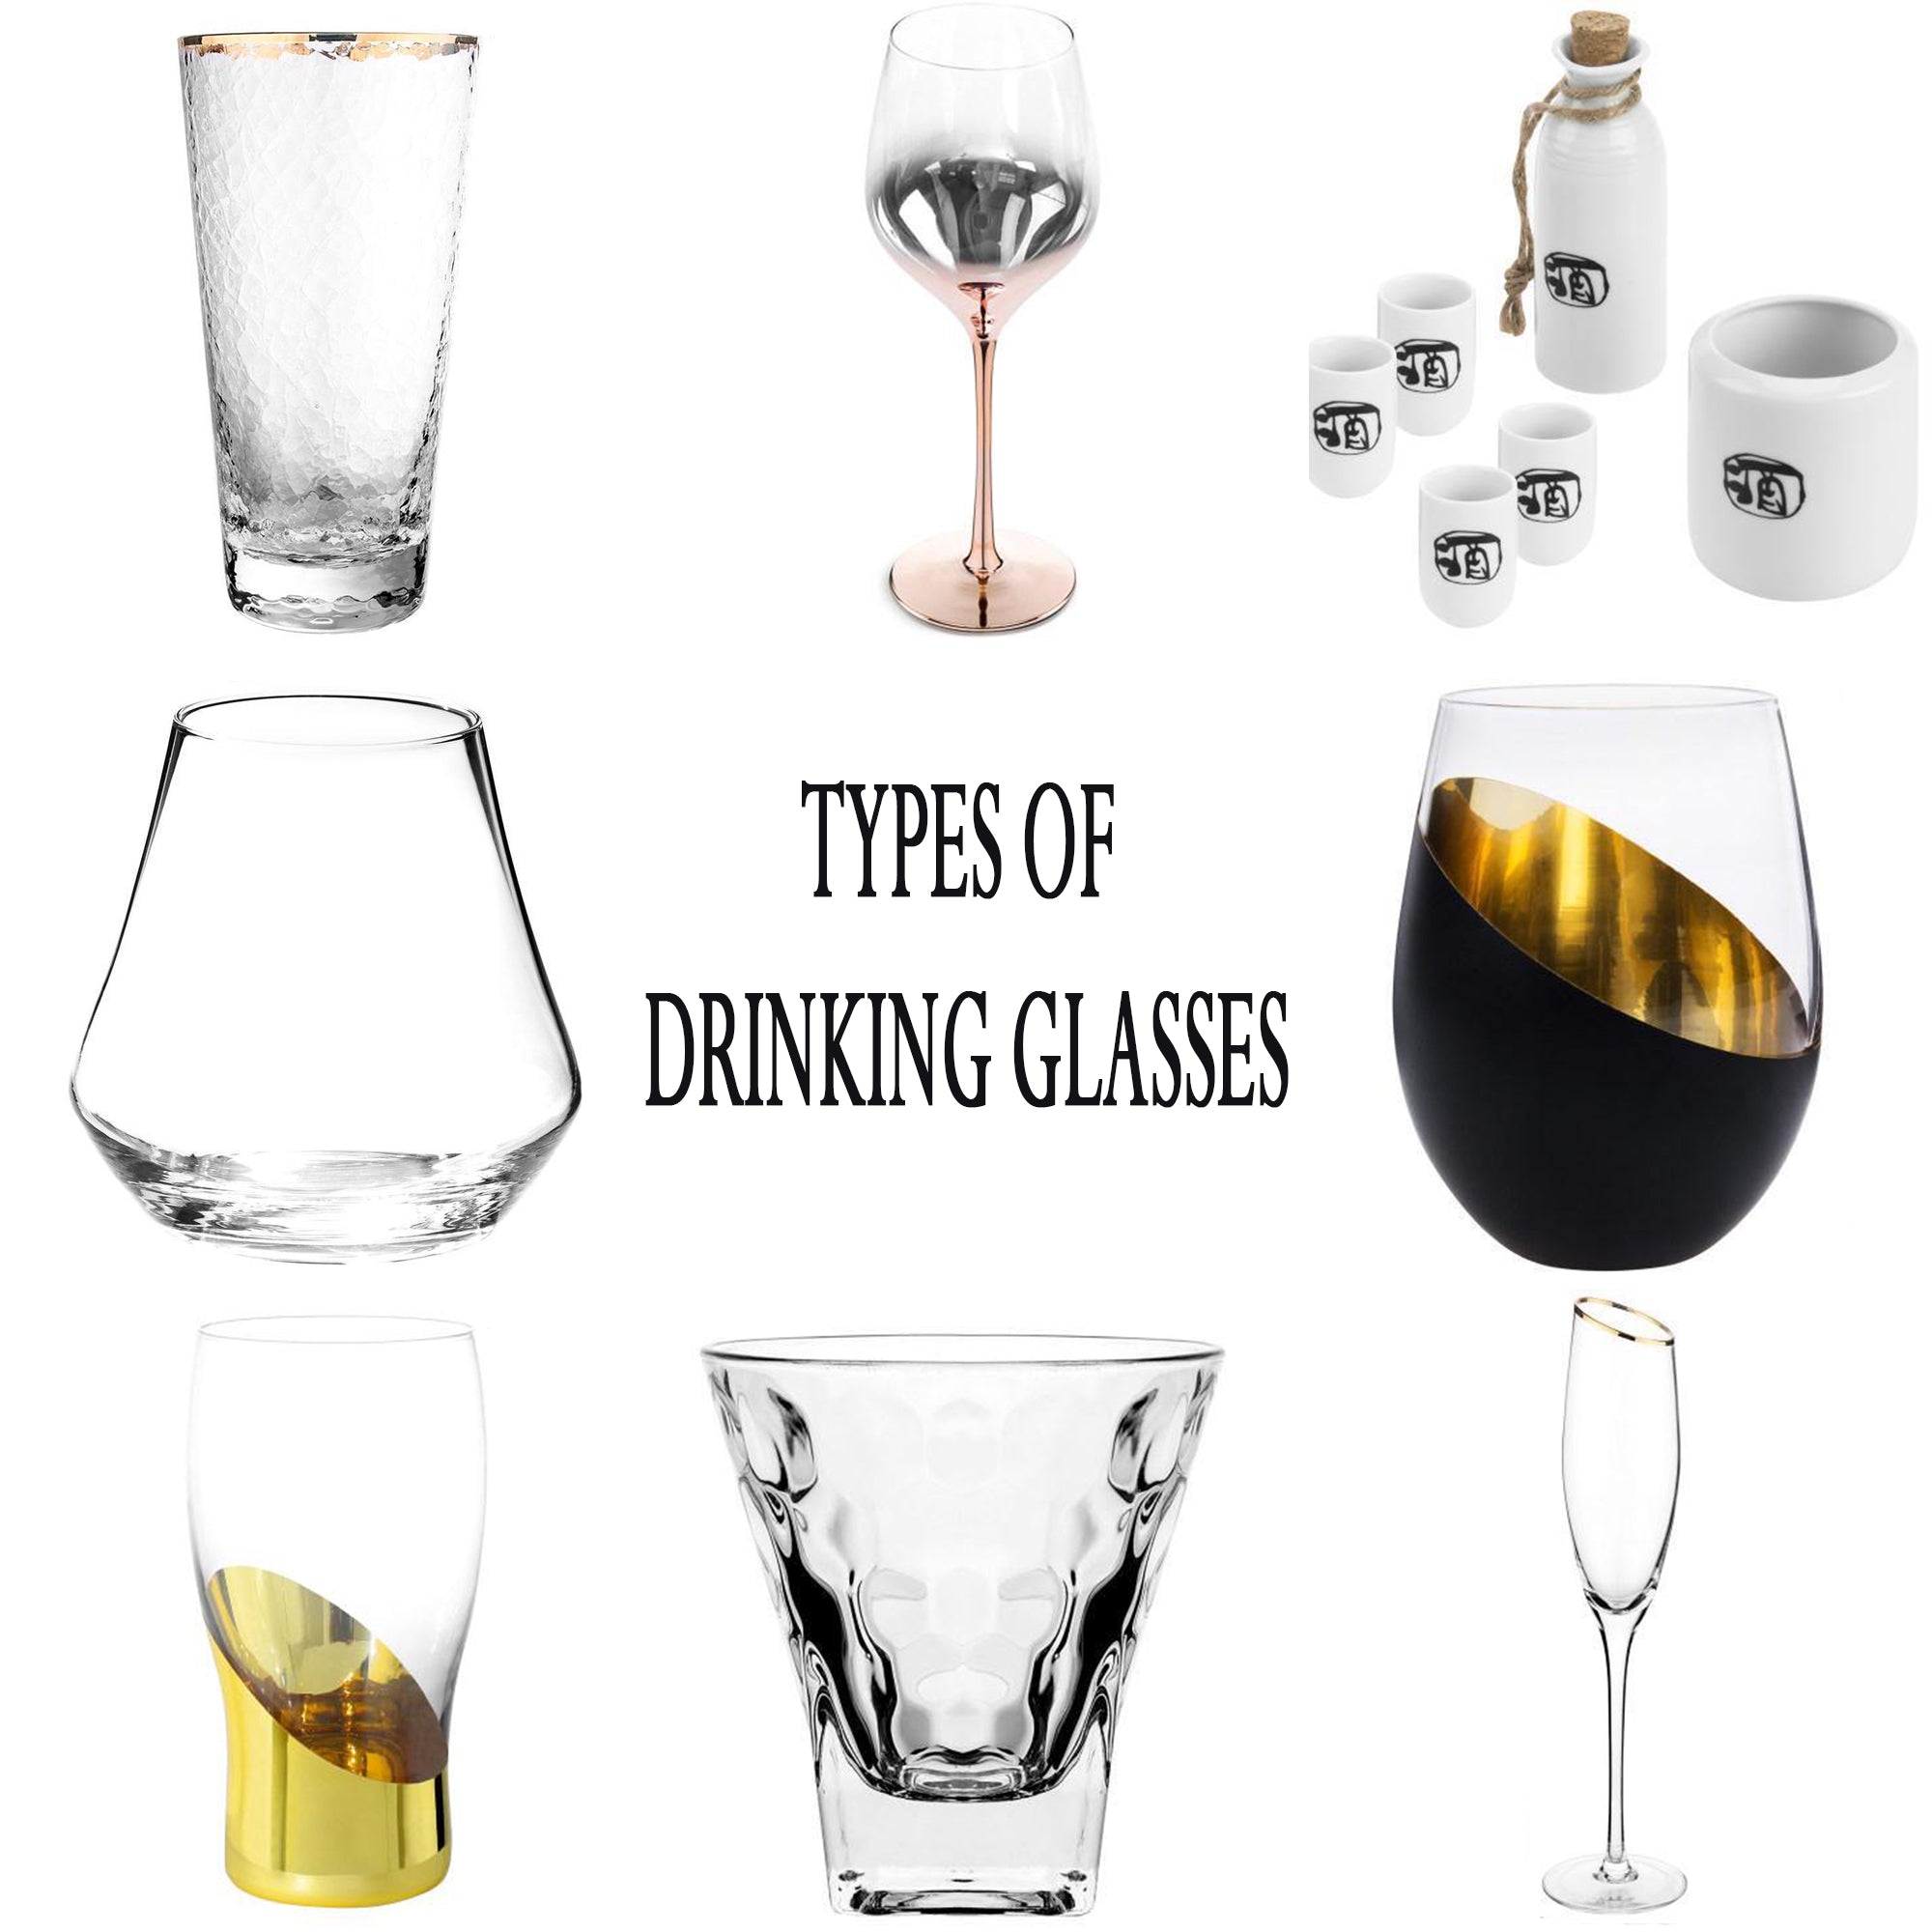 http://www.mygift.com/cdn/shop/articles/types_of_drinking_glasses.jpg?v=1627661705